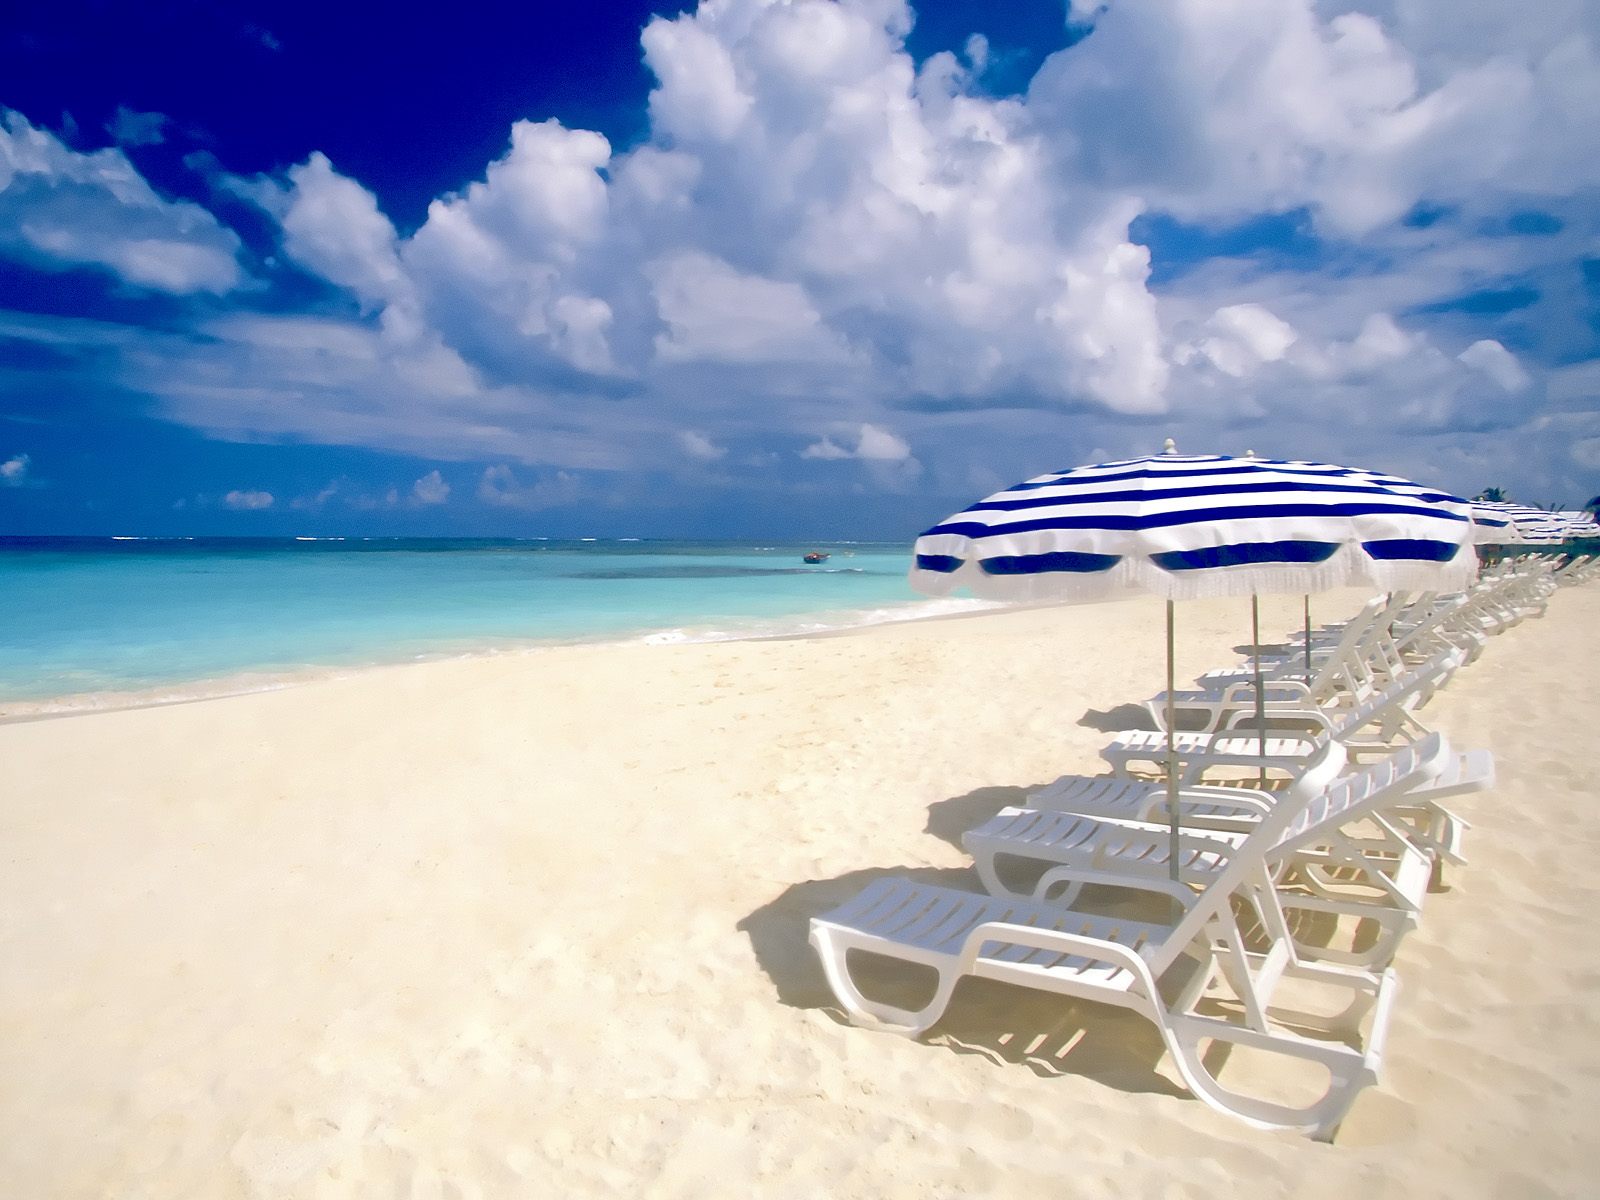 Pretty Beach Scene Photo Sharing Florida Resorts